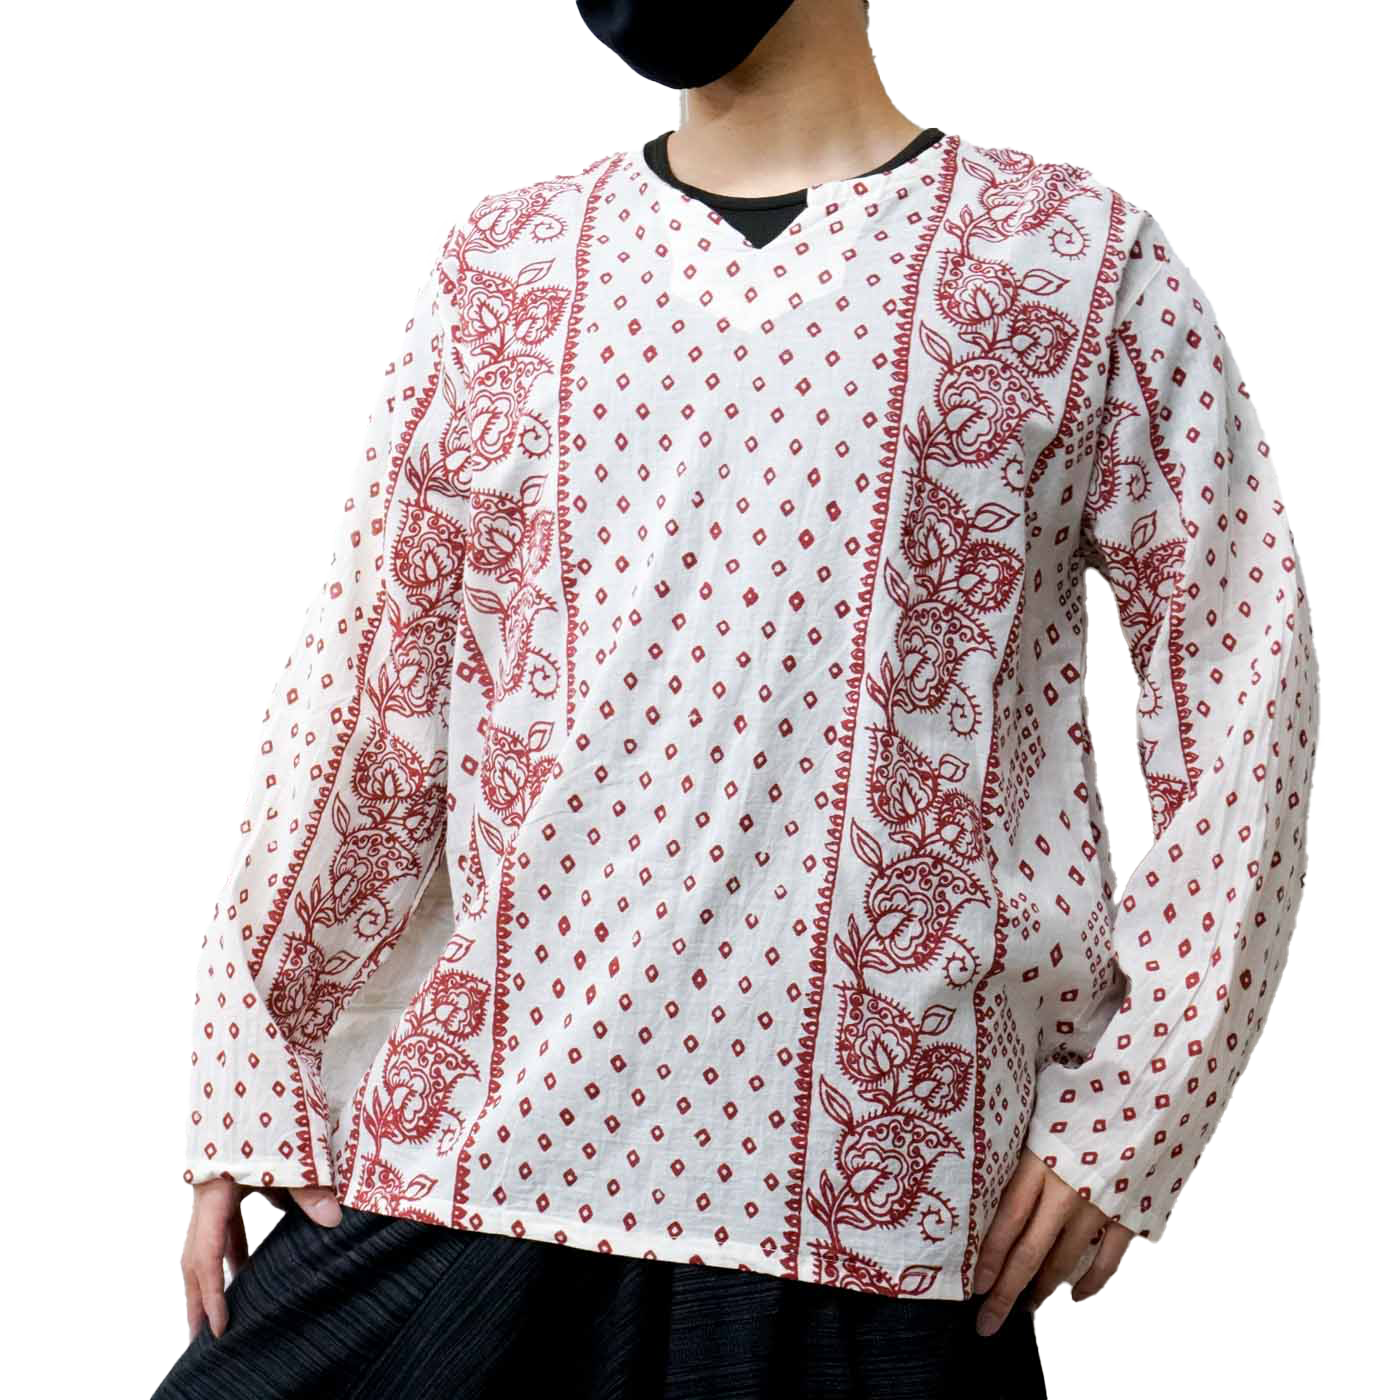 エスニック Tシャツ 長袖 クルタシャツ トップス メンズ レディース ユニセックス 花柄 フラワー 大きめサイズ ゆったり アジアン ファッションブラック